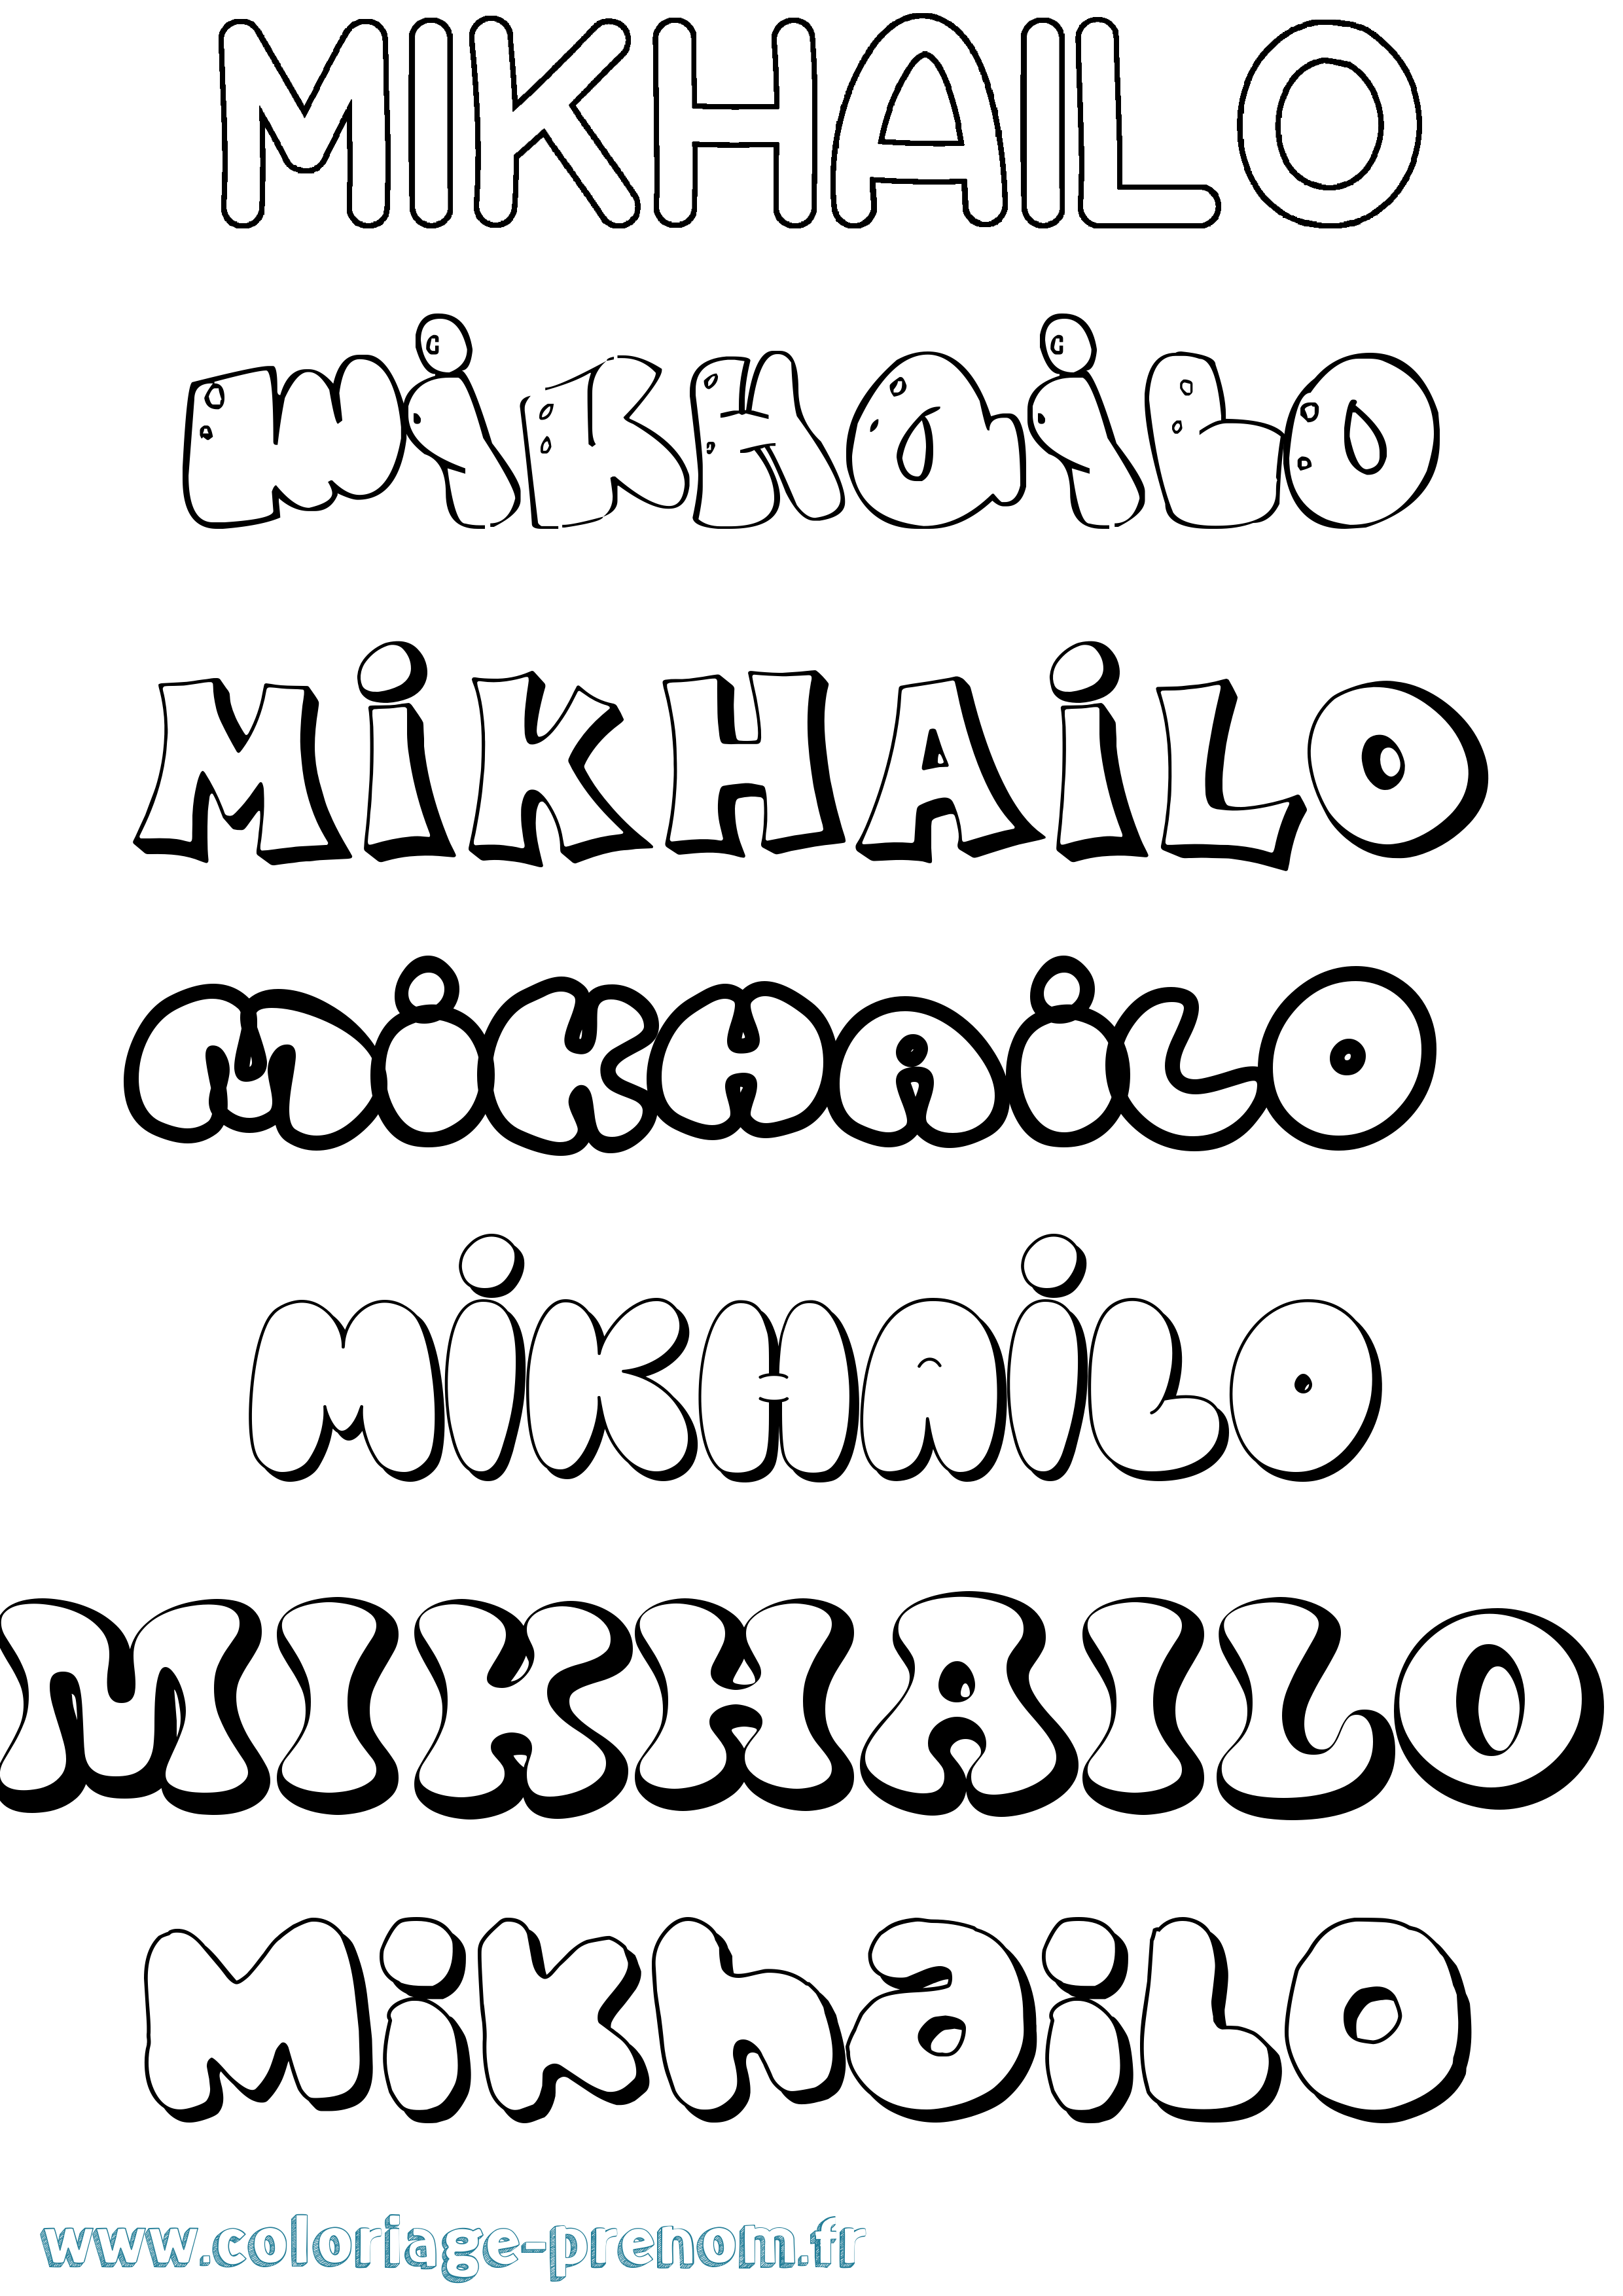 Coloriage prénom Mikhailo Bubble